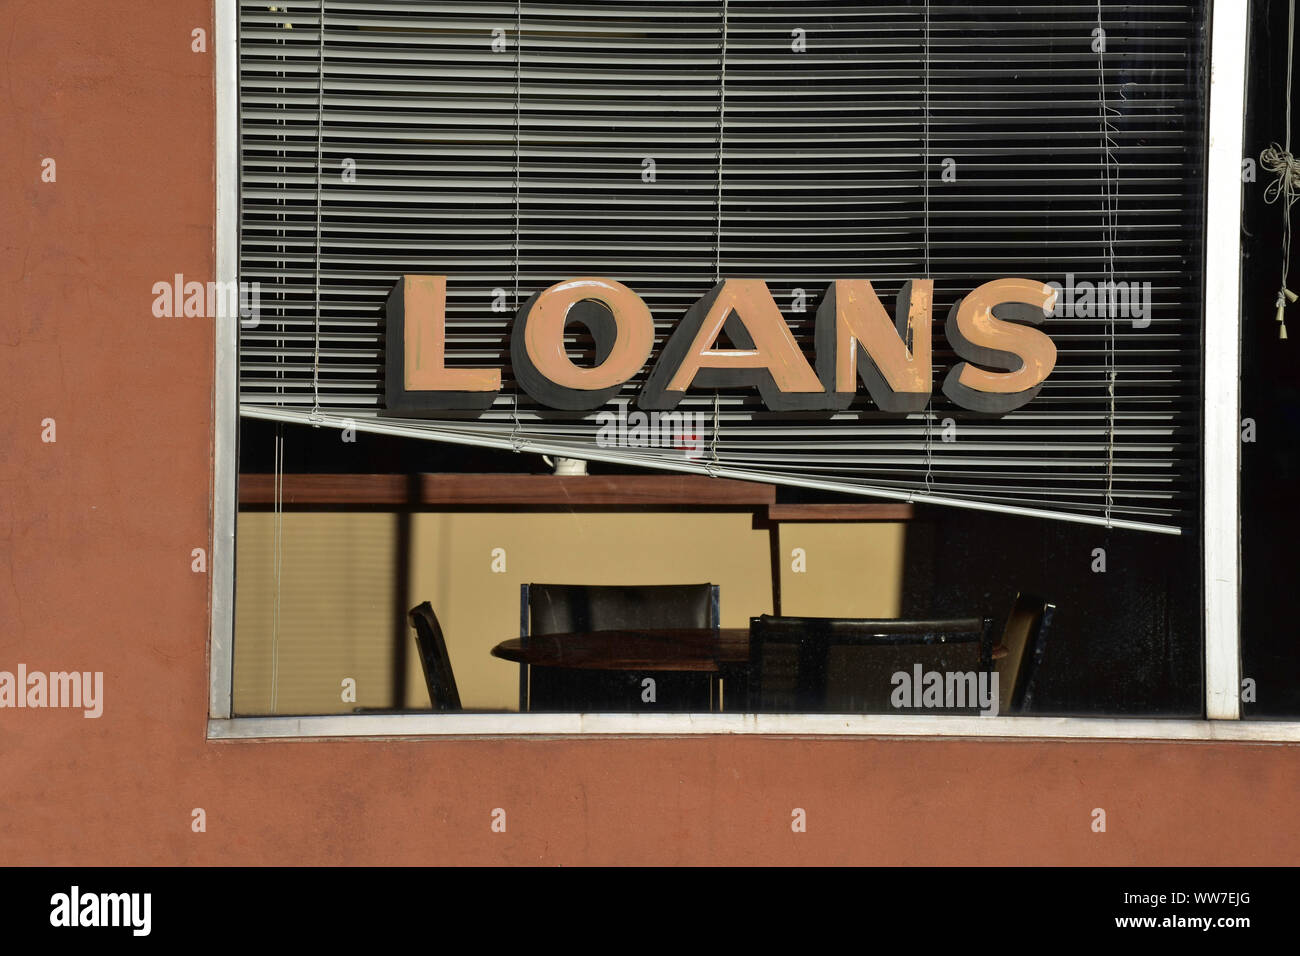 Eine ruhige Szene, in einer kleinen Stadt zeigt ein Darlehen unterzeichnen im Fenster eines Finanzdienstleistungen Verkaufsplattform. Stockfoto